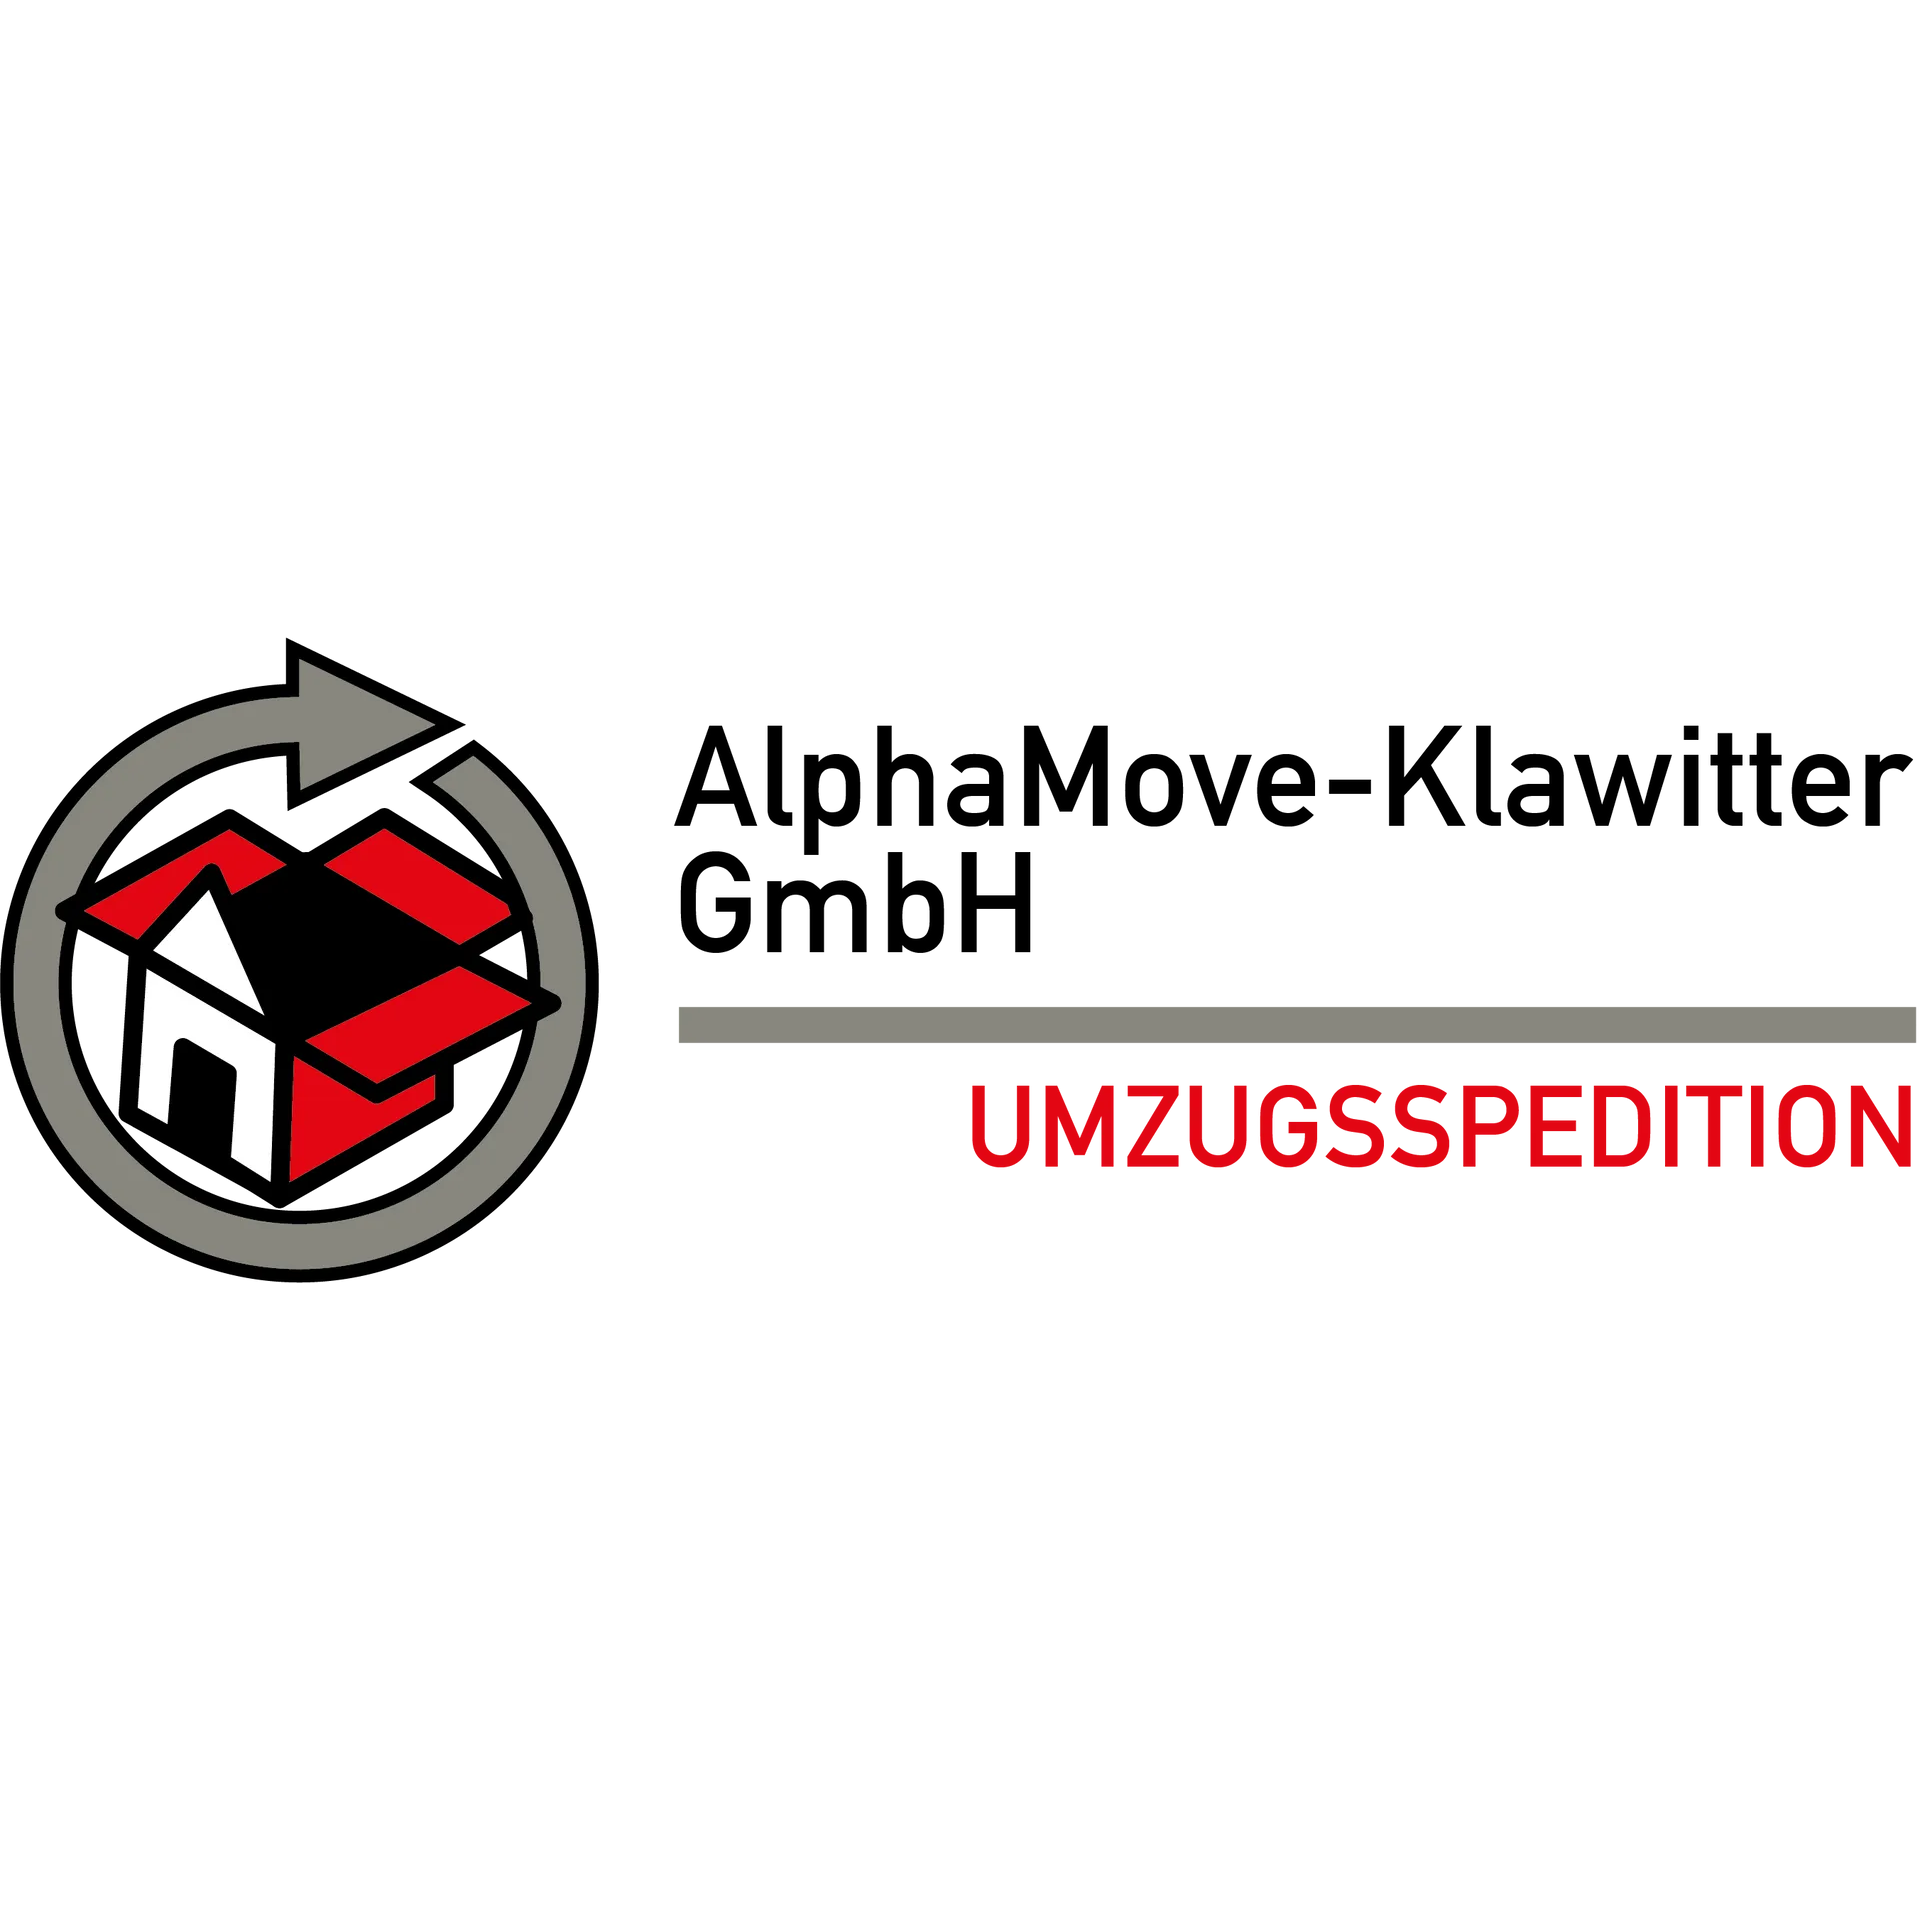 AlphaMove-Klawitter GmbH  